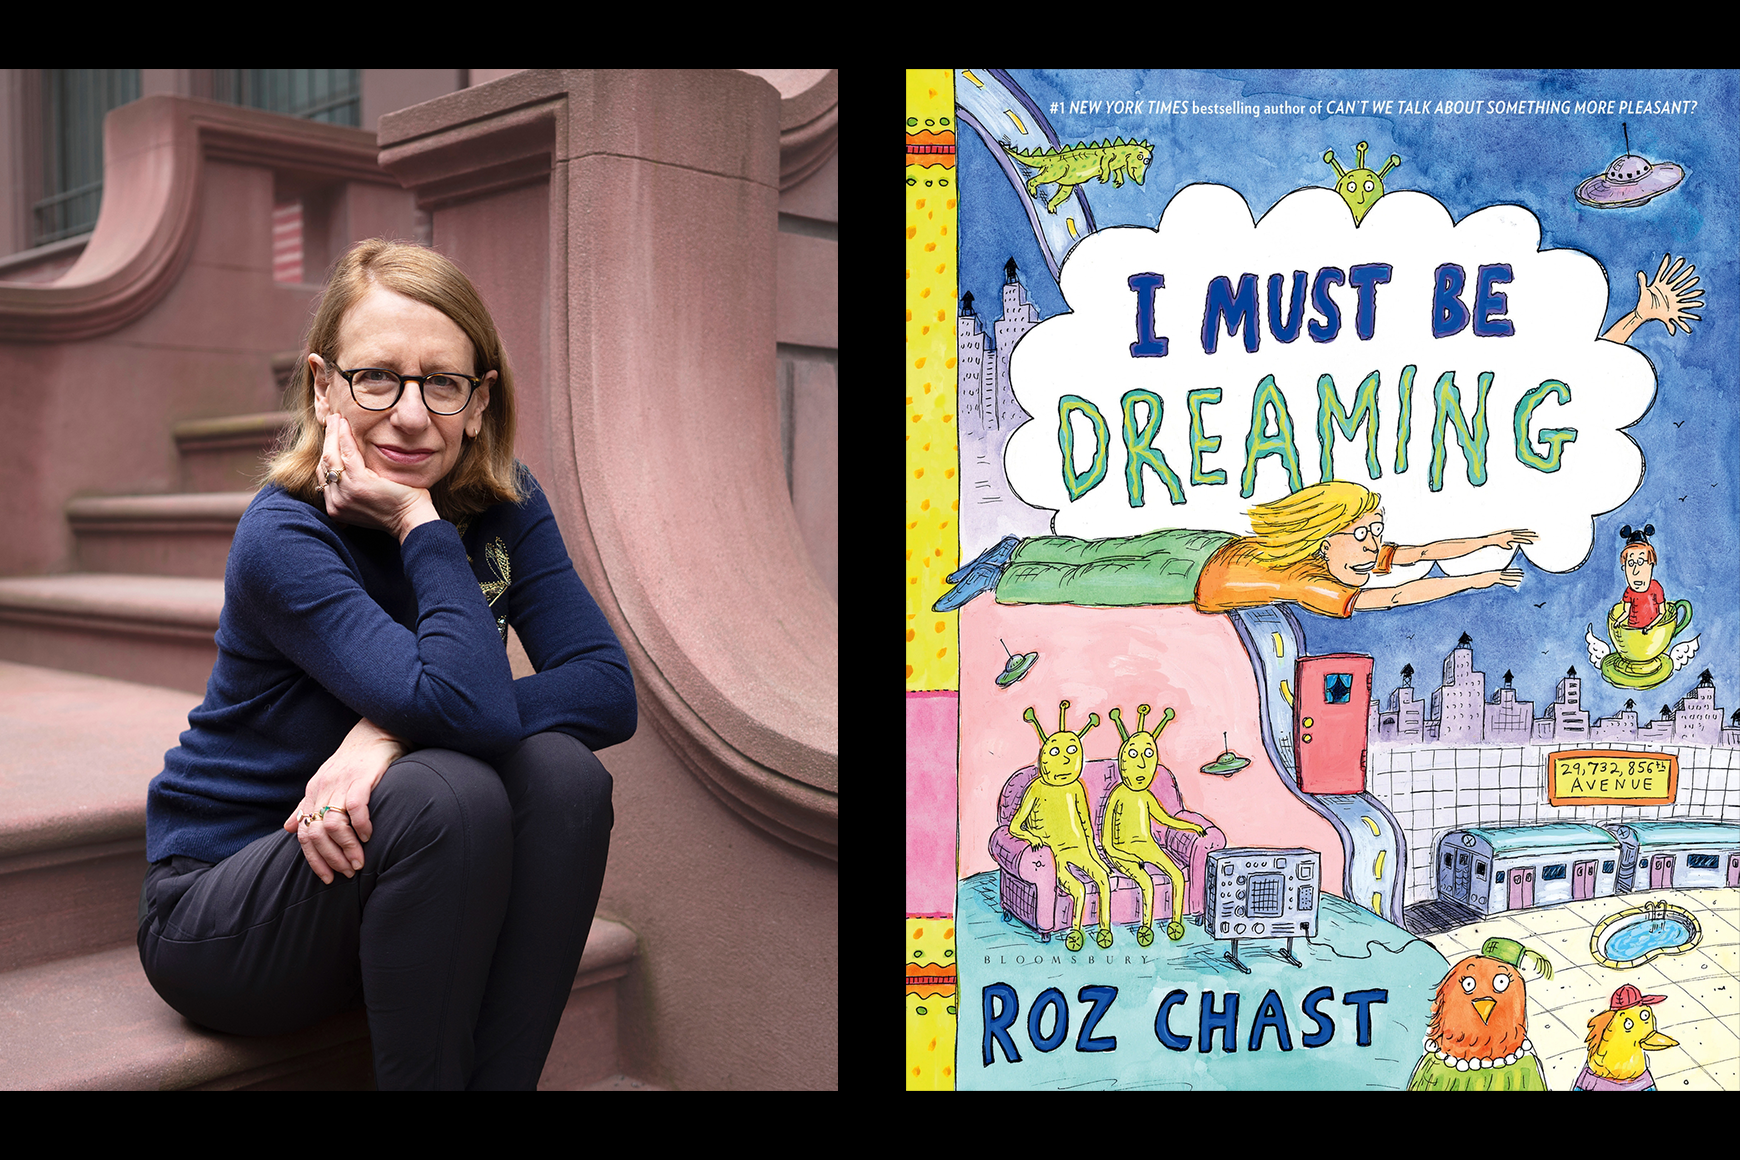 Izquierda: imagen de Roz Chast sentada en un porche de piedra rojiza Derecha: gráfico en color Portada del libro "I Must be Dreaming"